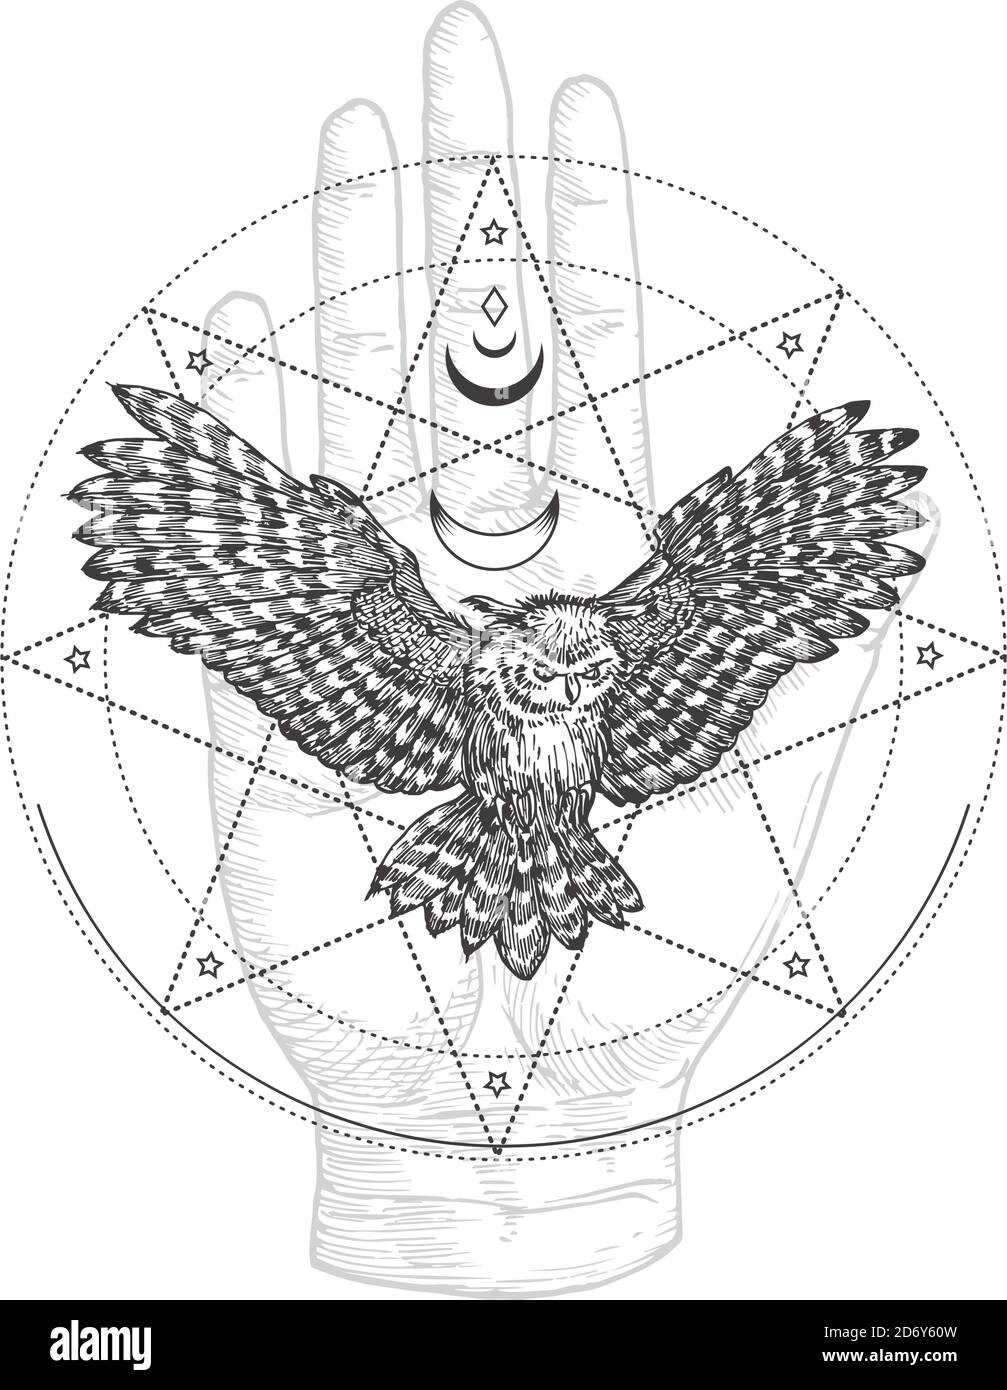 Symbole Occult abstrait, logo style vintage ou modèle de tatouage. Symbole d'esquisse de main de chouette noire volante et de paume dessinées à la main et magie mystique géométrique Illustration de Vecteur